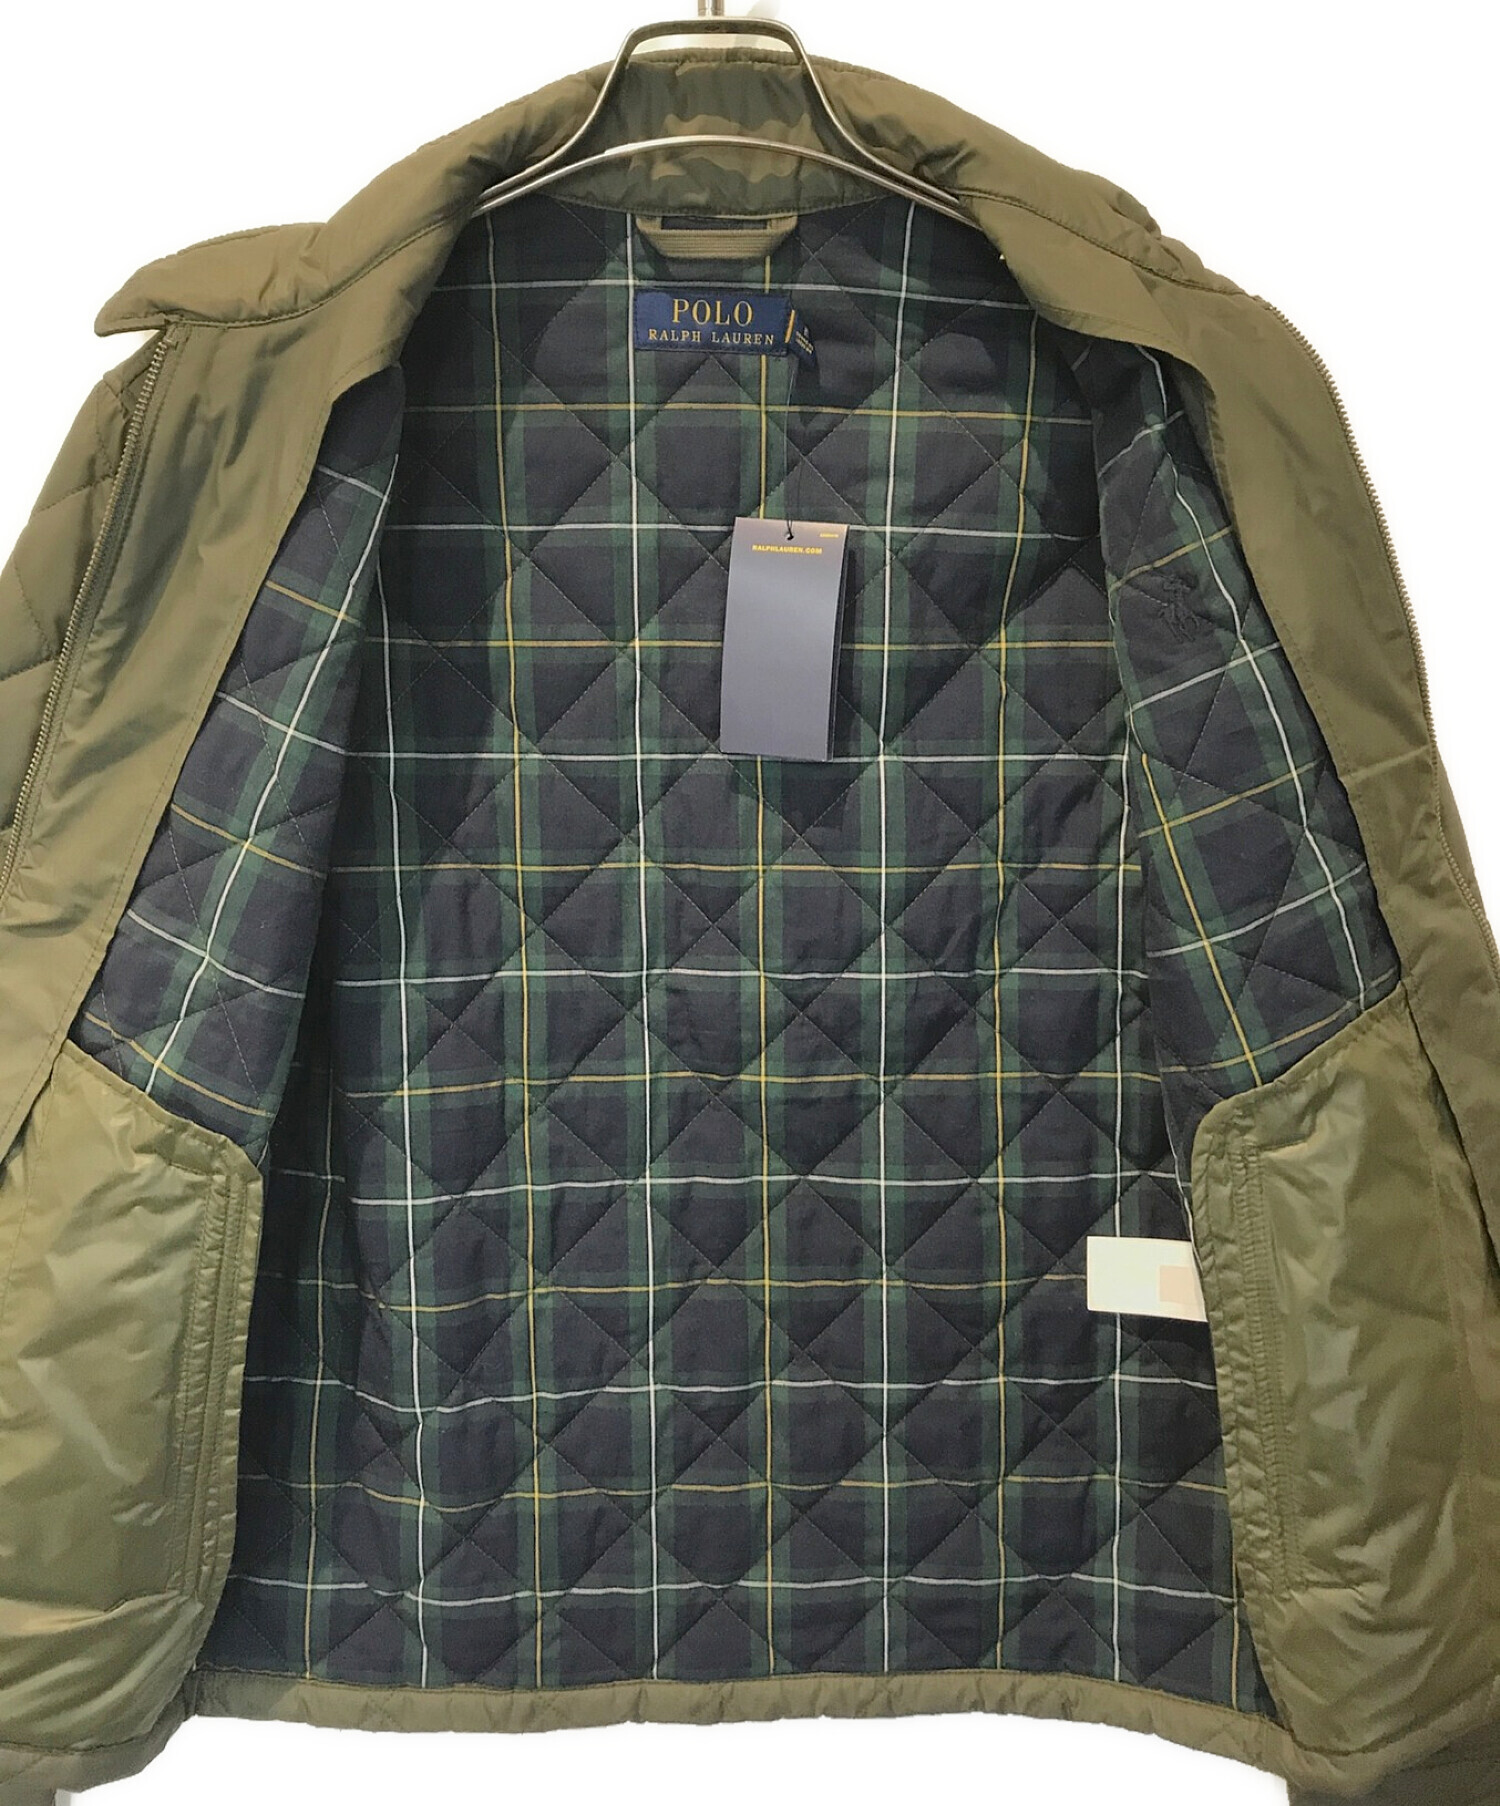 POLO RALPH LAUREN (ポロ・ラルフローレン) キルティングジャケット オリーブ サイズ:S 未使用品